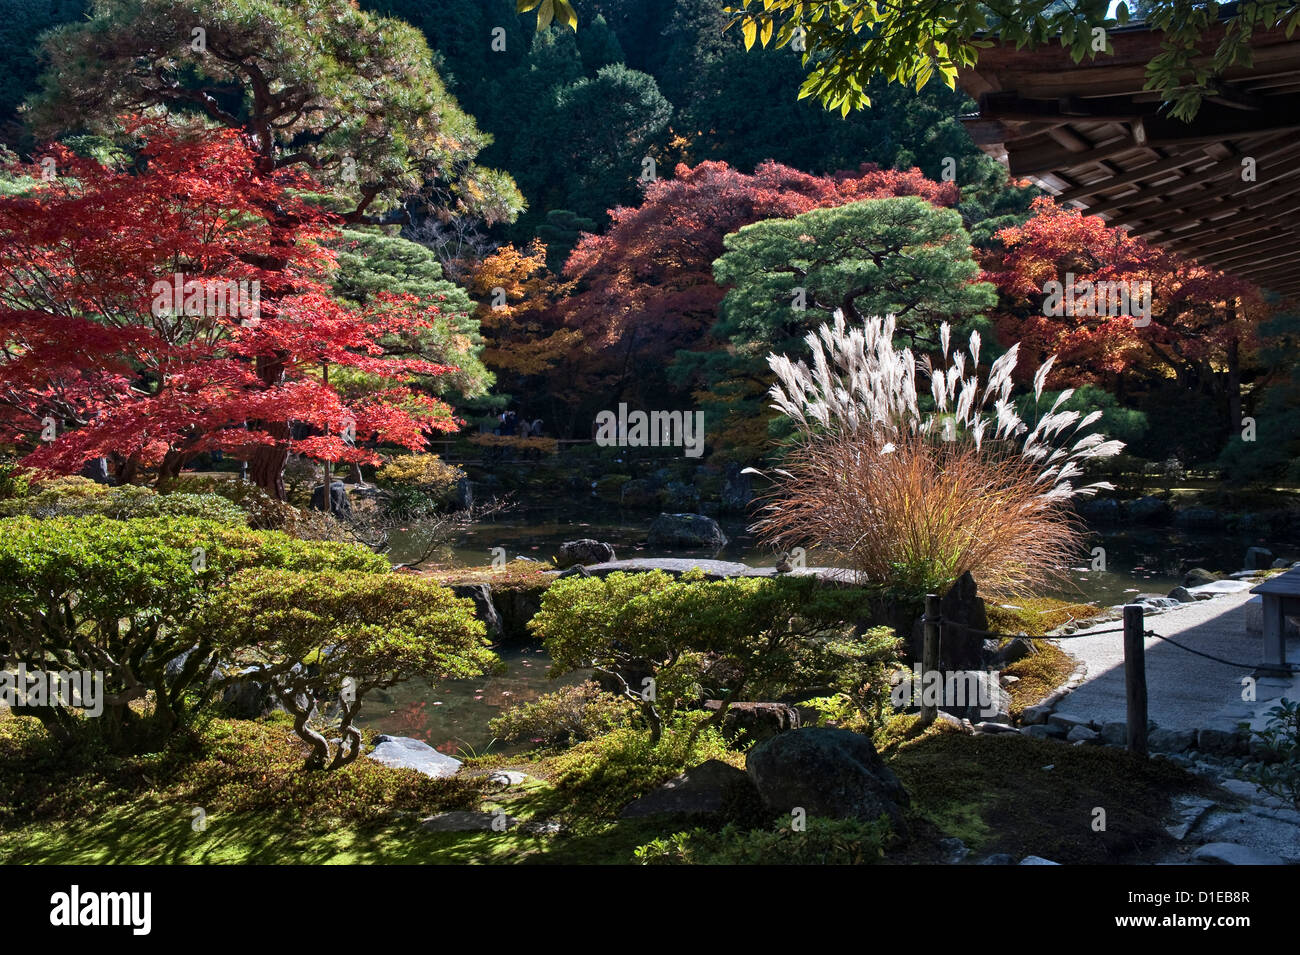 Feuillage d'automne dans les jardins entourant le temple Ginkaku-ji (Jisho-ji ou le Pavillon d'argent) à Kyoto, Japon Banque D'Images